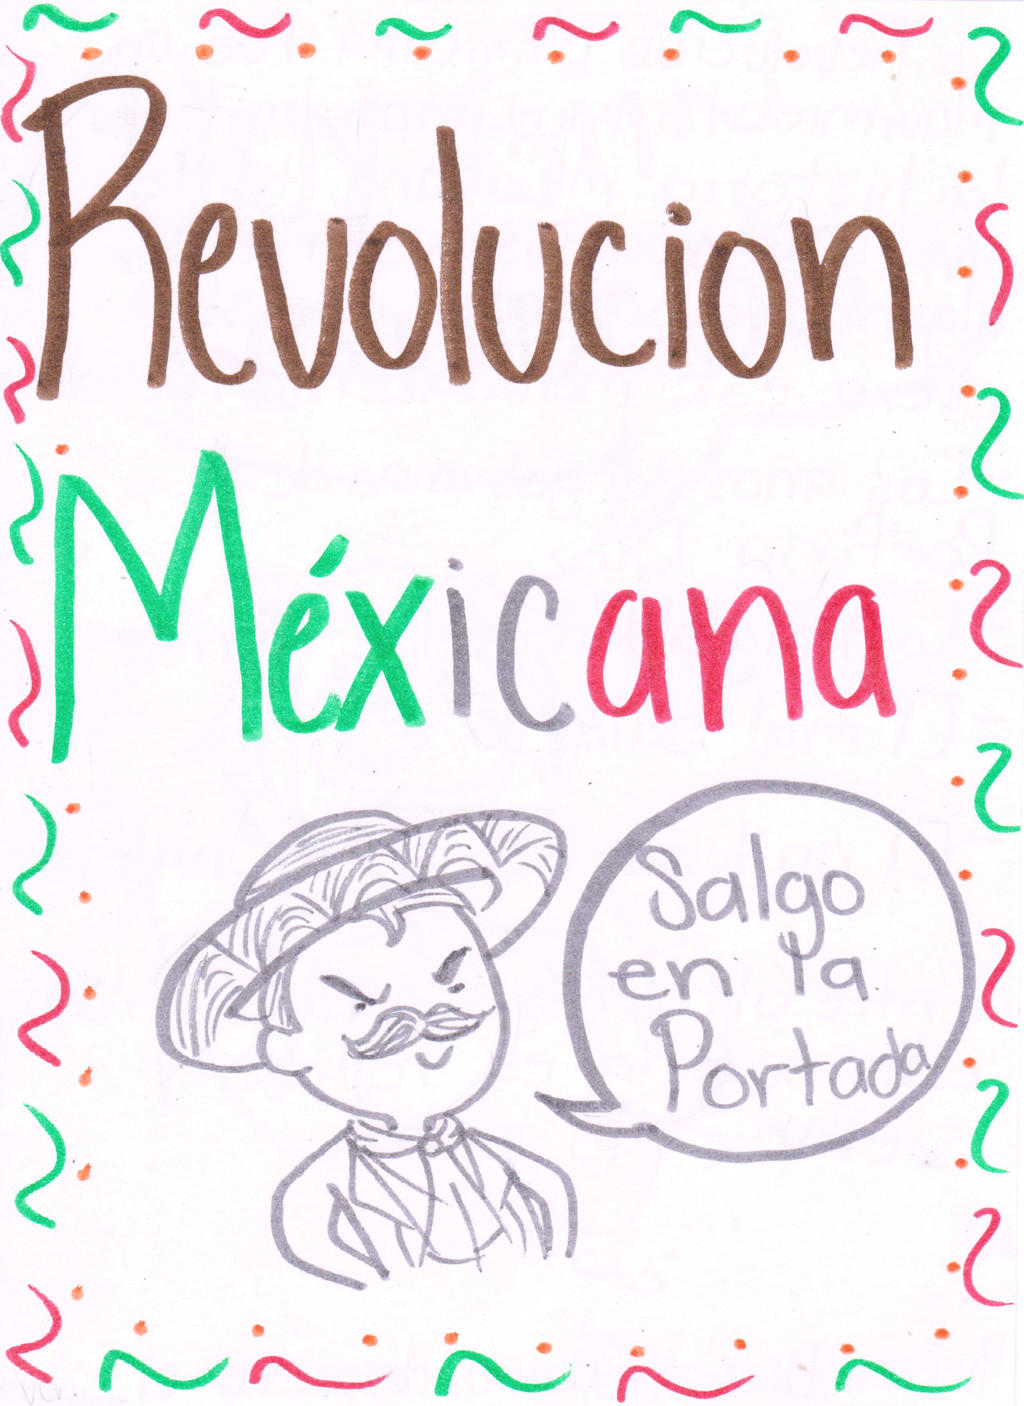 La Revolucion Mexicana by Nino5571 on DeviantArt